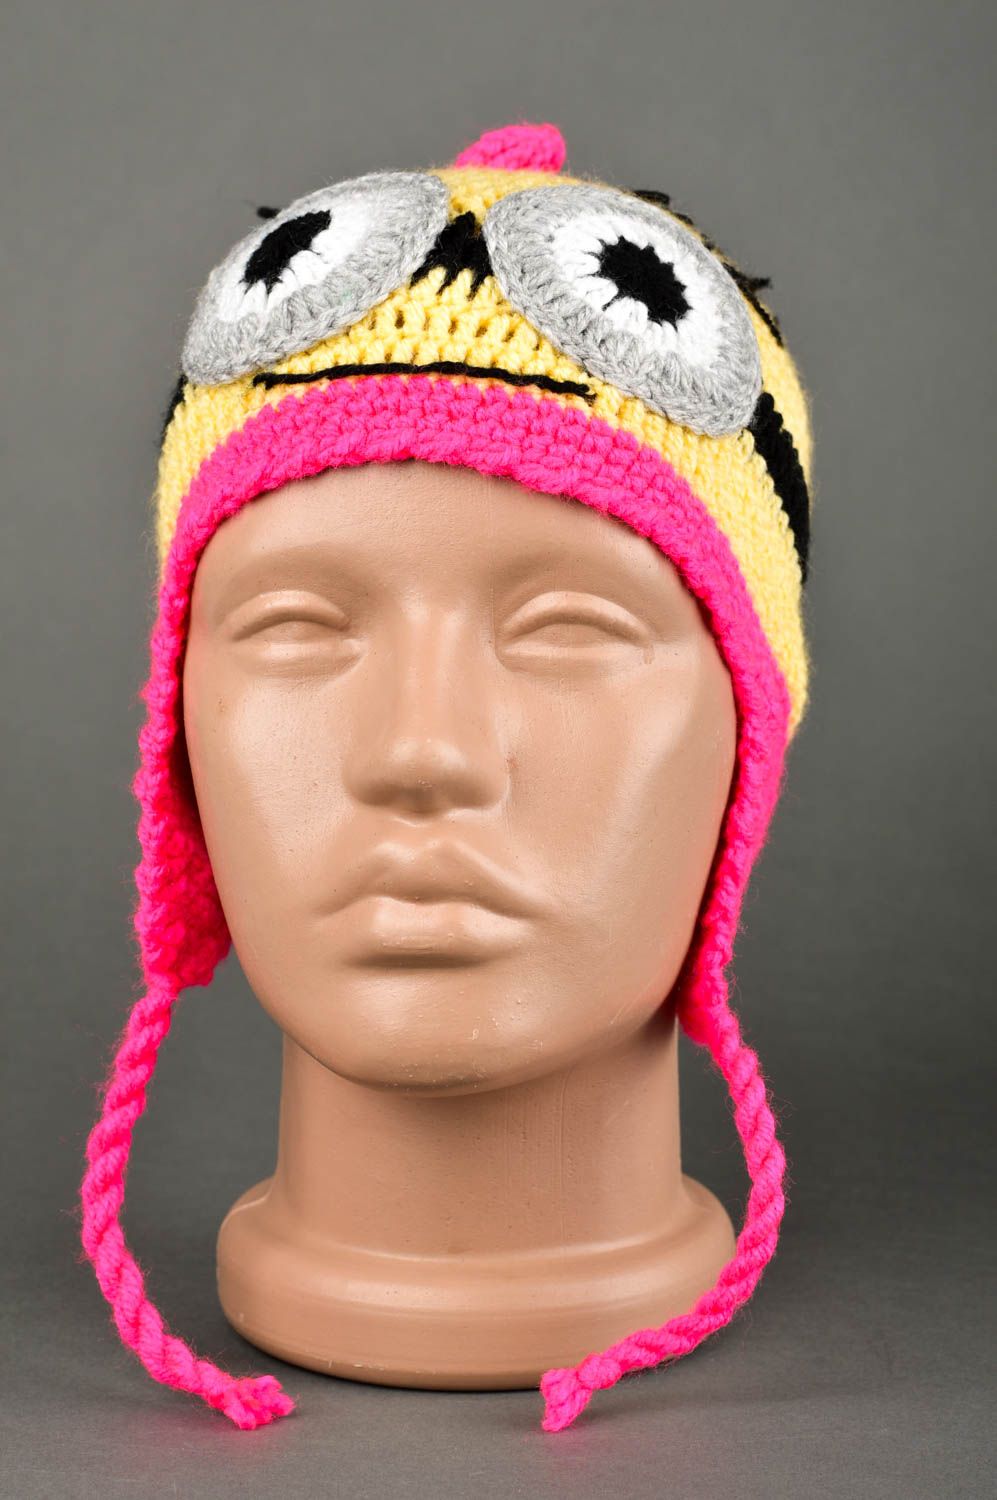 Handmade warm hat headwear for children hats for girls kids accessories photo 1